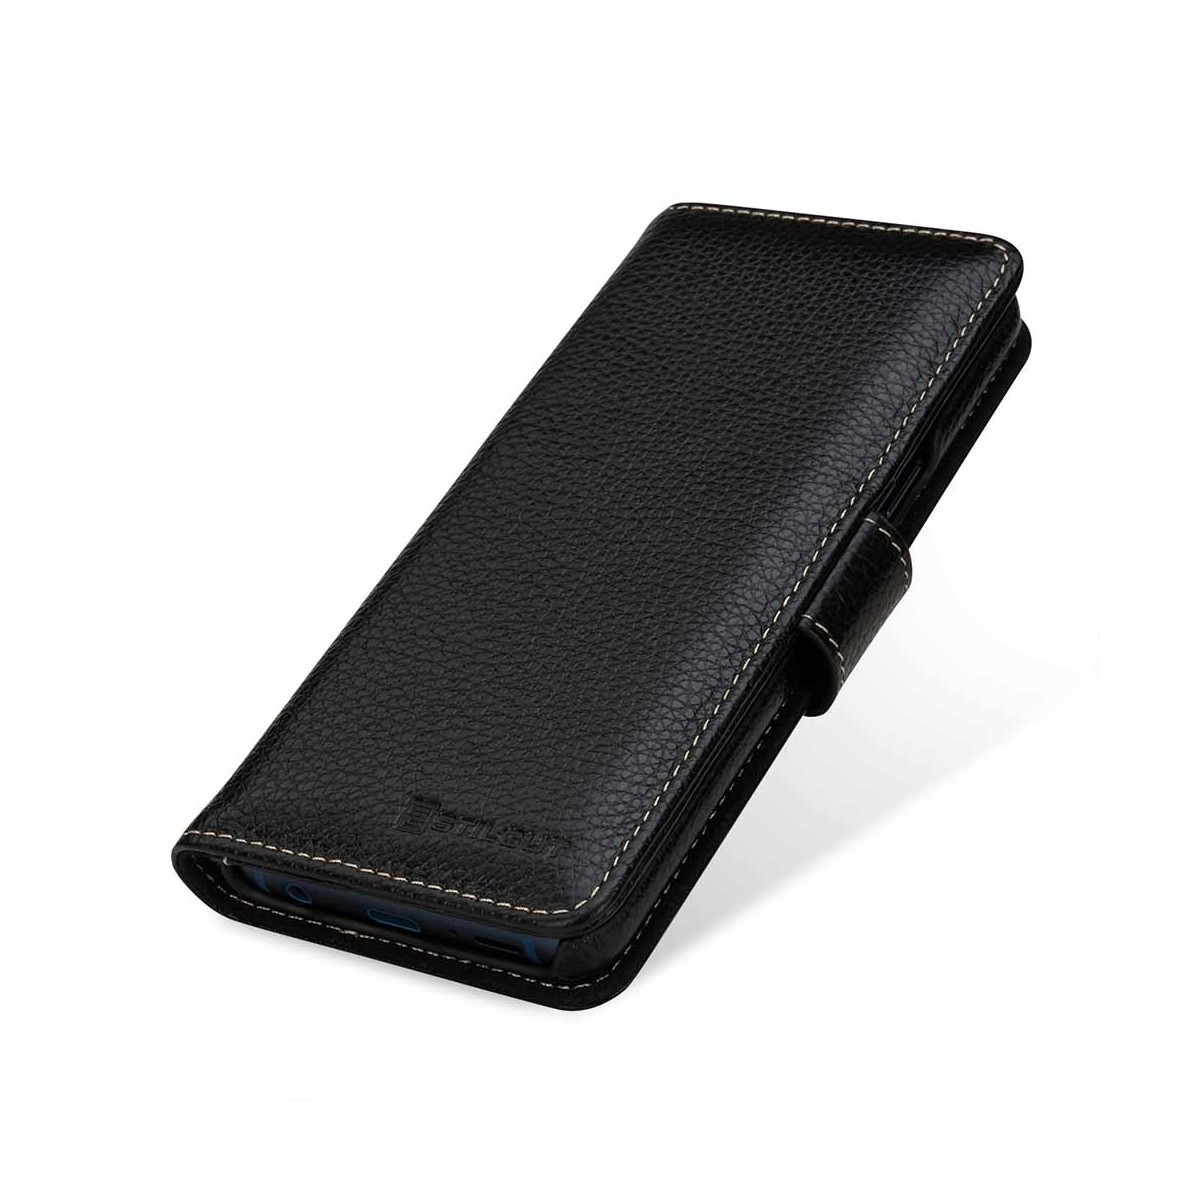 Etui Galaxy S9 porte-cartes grainé noir en cuir véritable - Stilgut